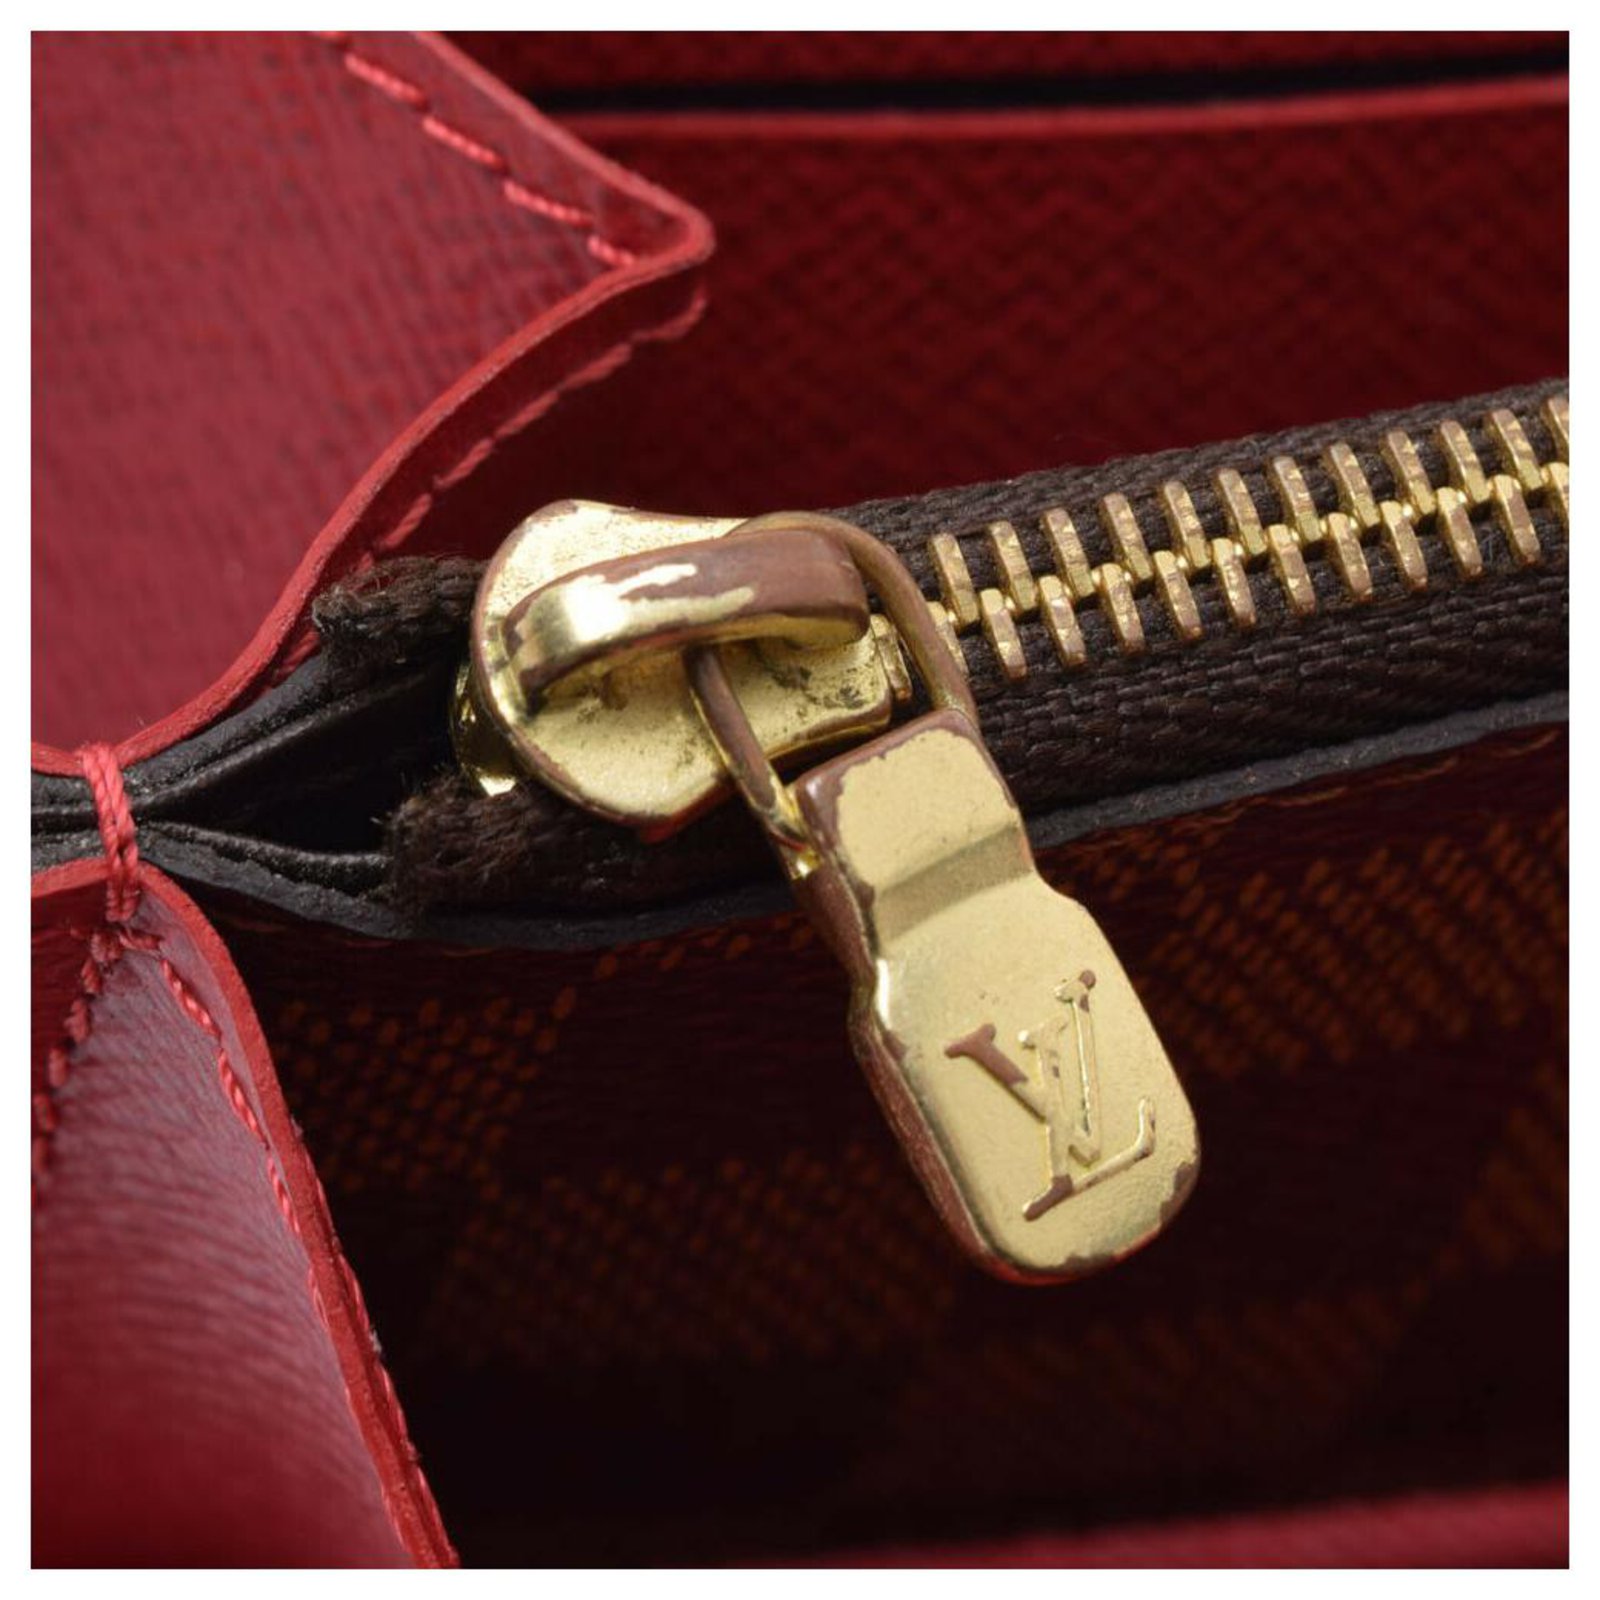 Portefeuille Louis Vuitton Portofeuil Clemence M60169 femme rouge